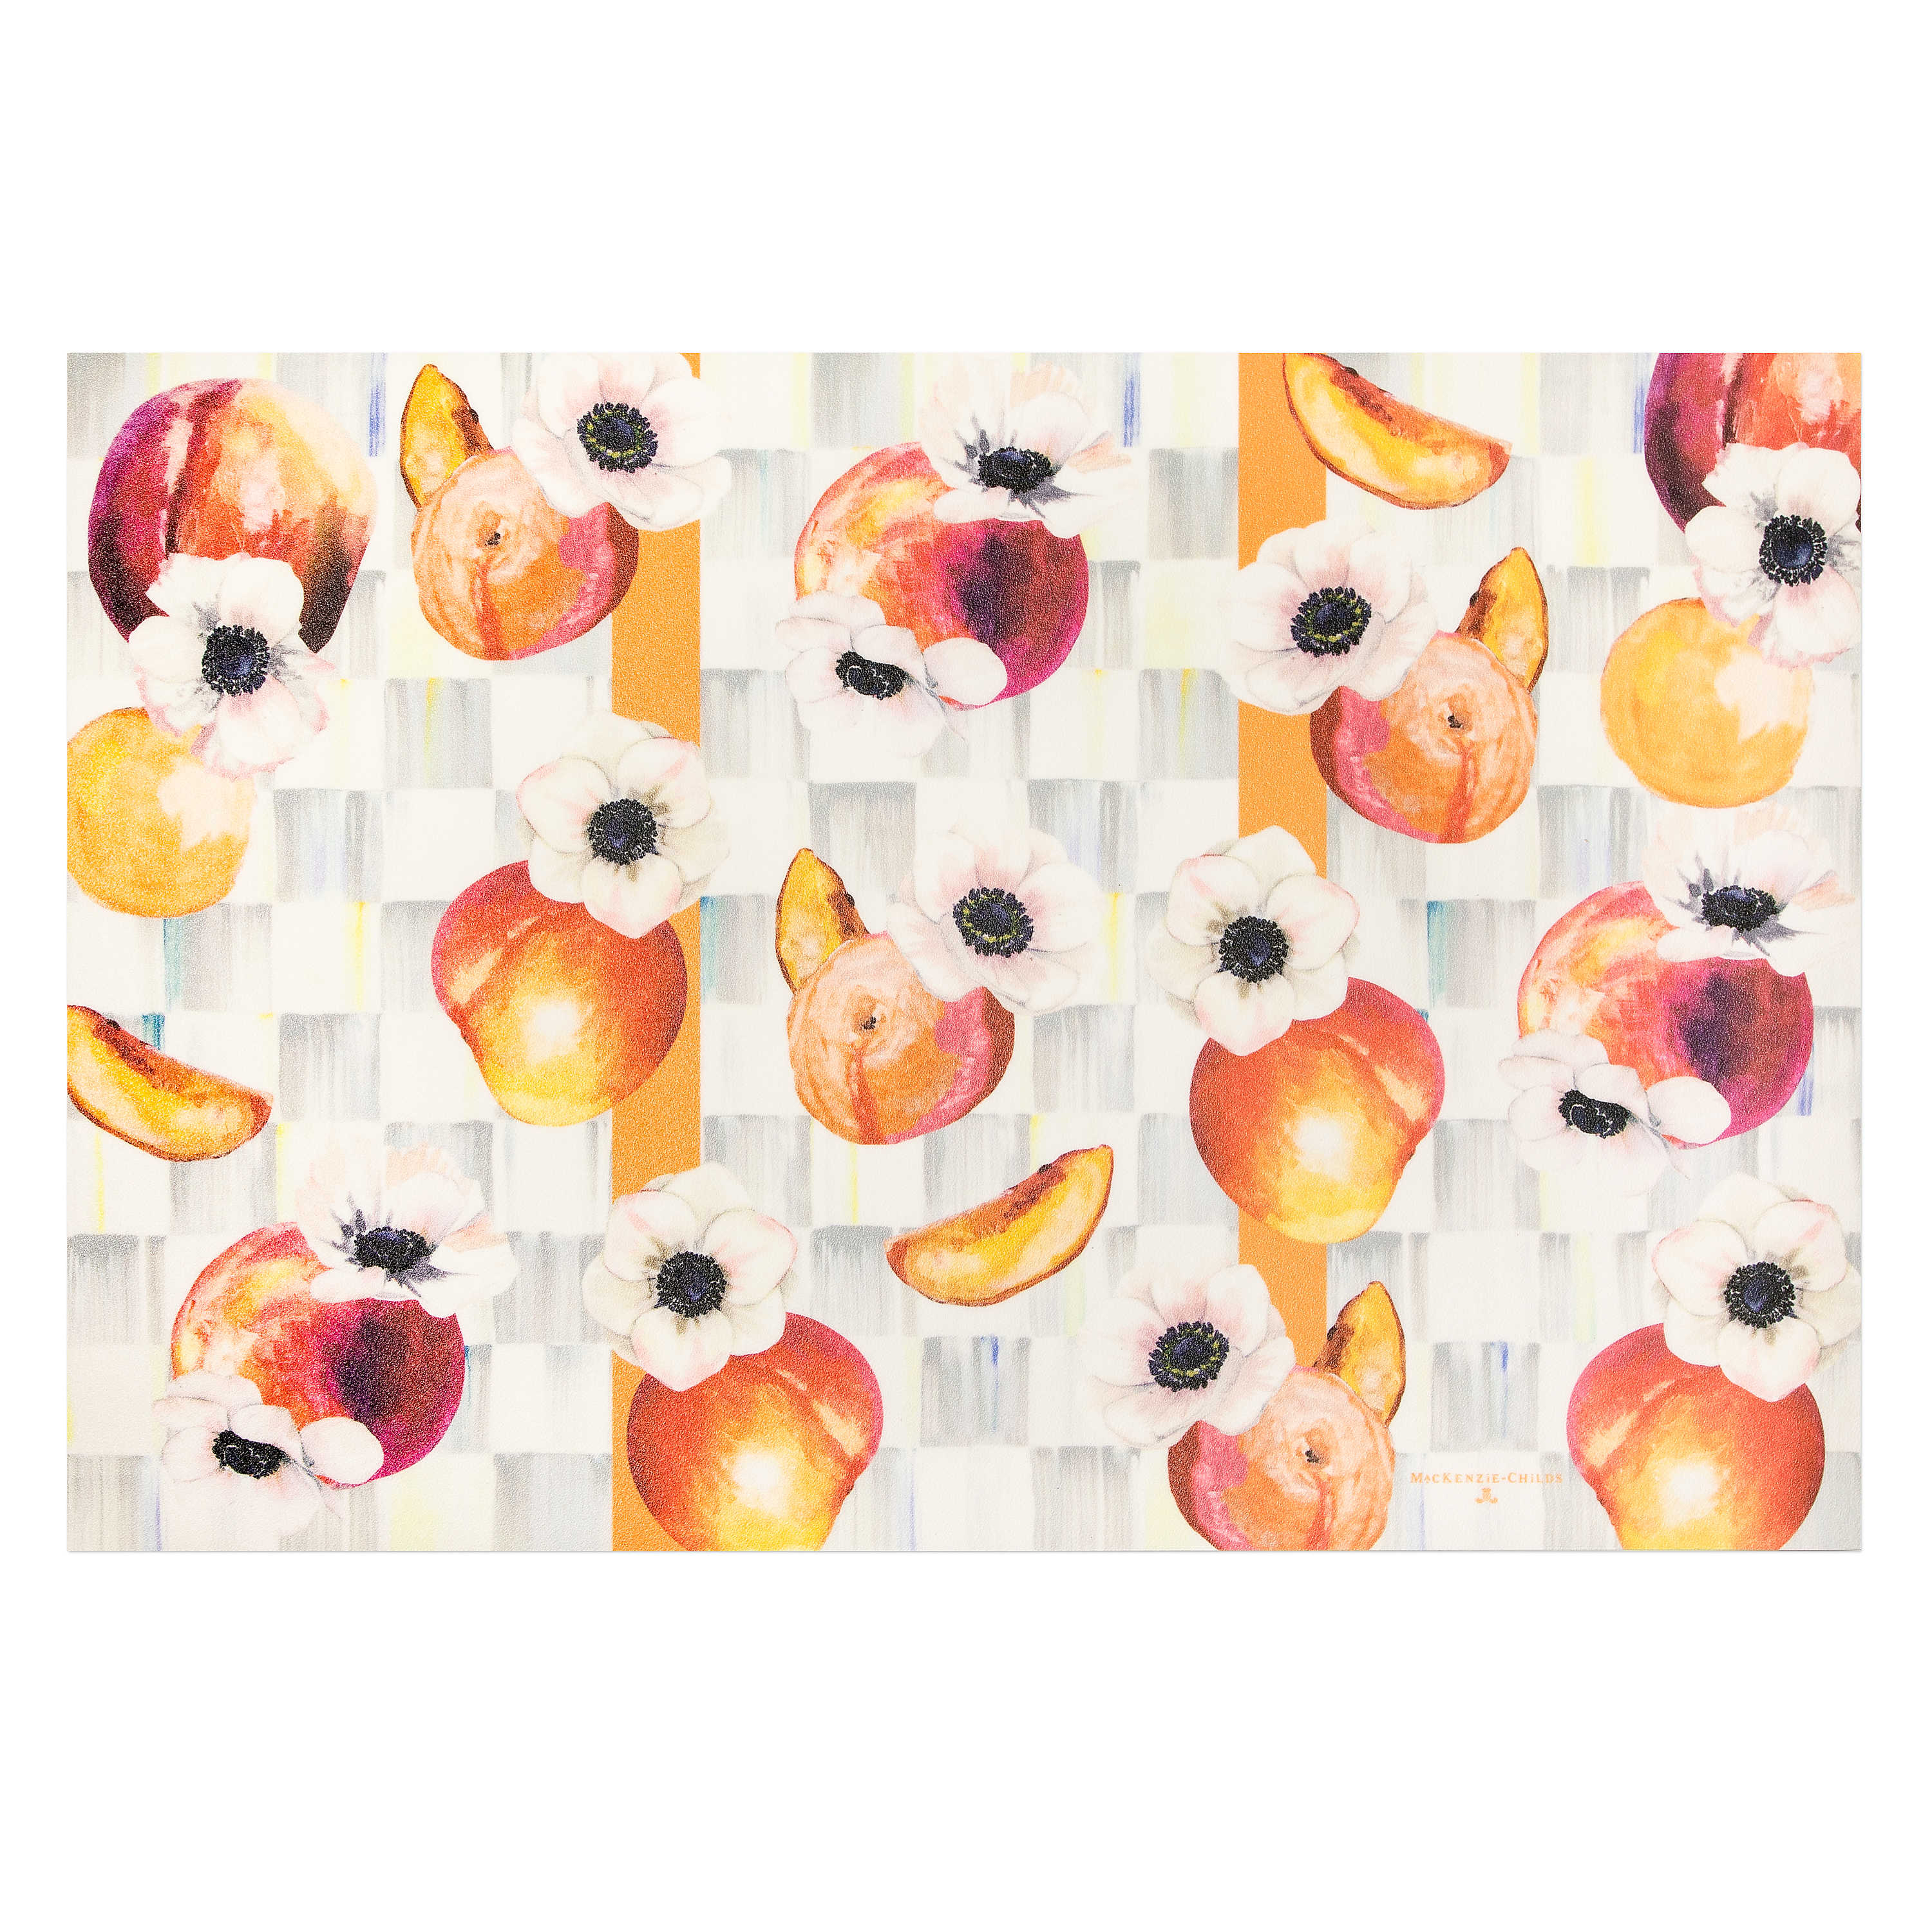 Peaches & Anemones Floor Mat - 2 x 3 mackenzie-childs Panama 1